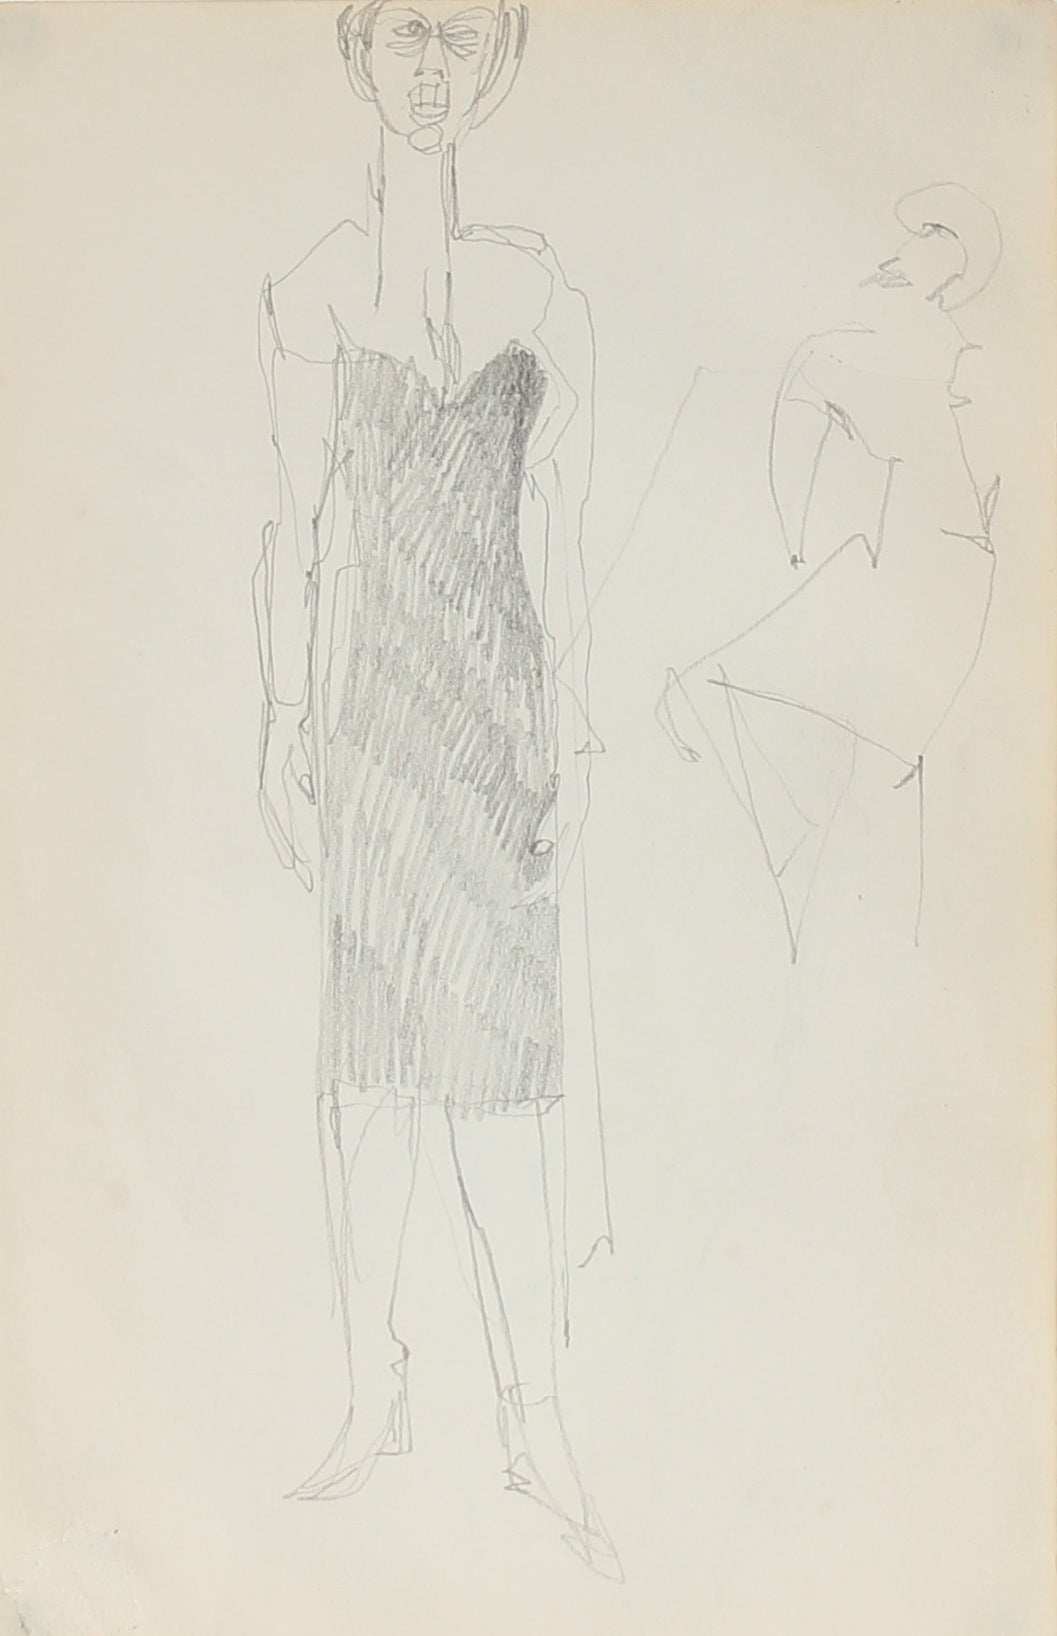 Woman in Black, New York&lt;br&gt;&lt;br&gt;Graphite, 1950-60s&lt;br&gt;&lt;br&gt;#0311